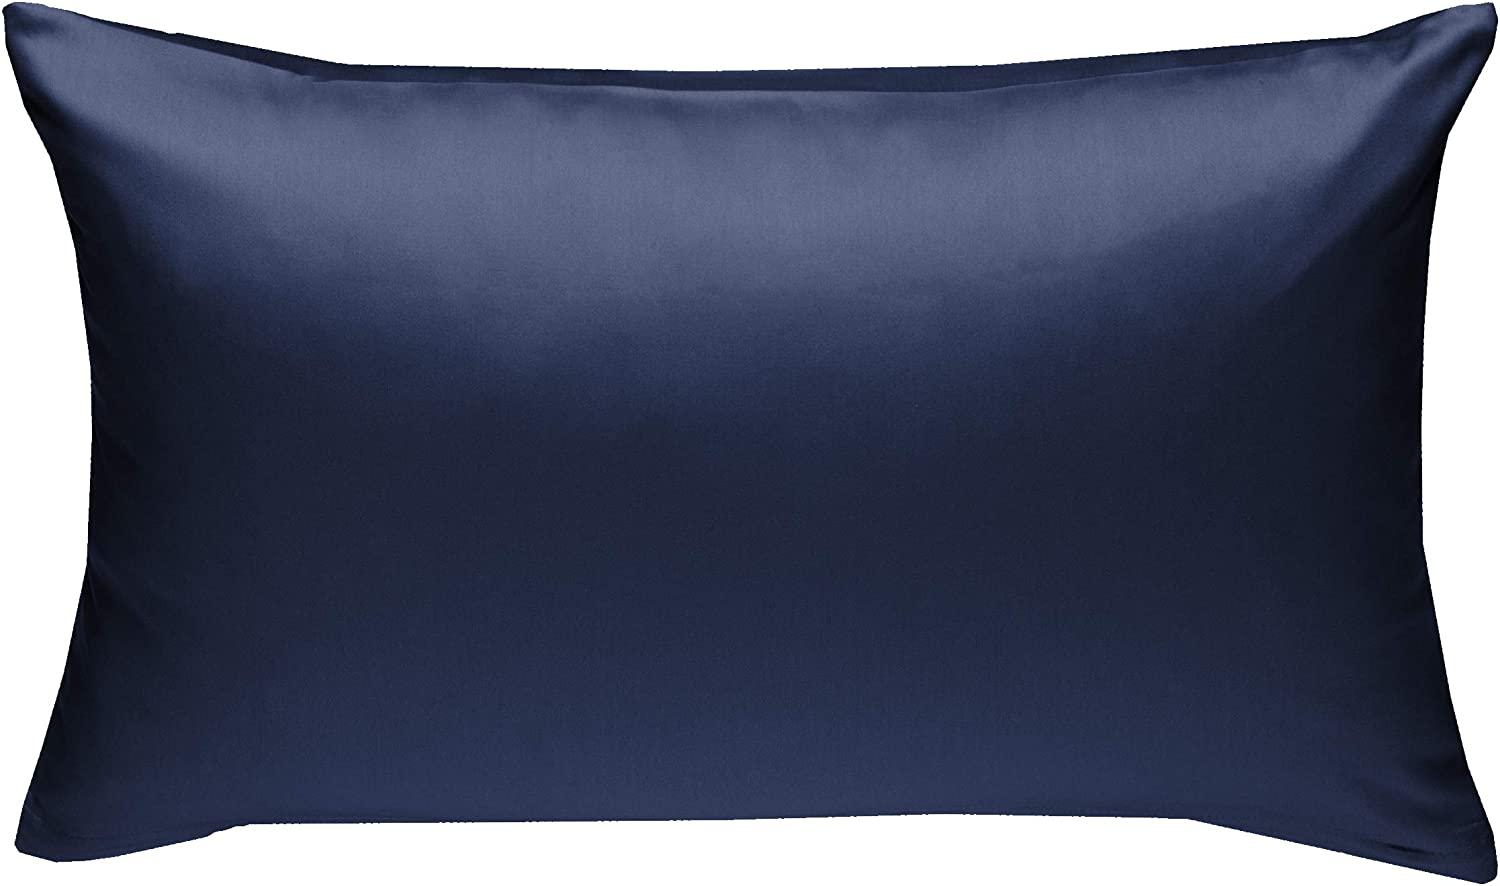 Bettwaesche-mit-Stil Mako-Satin / Baumwollsatin Bettwäsche uni / einfarbig dunkelblau Kissenbezug 40x60 cm Bild 1